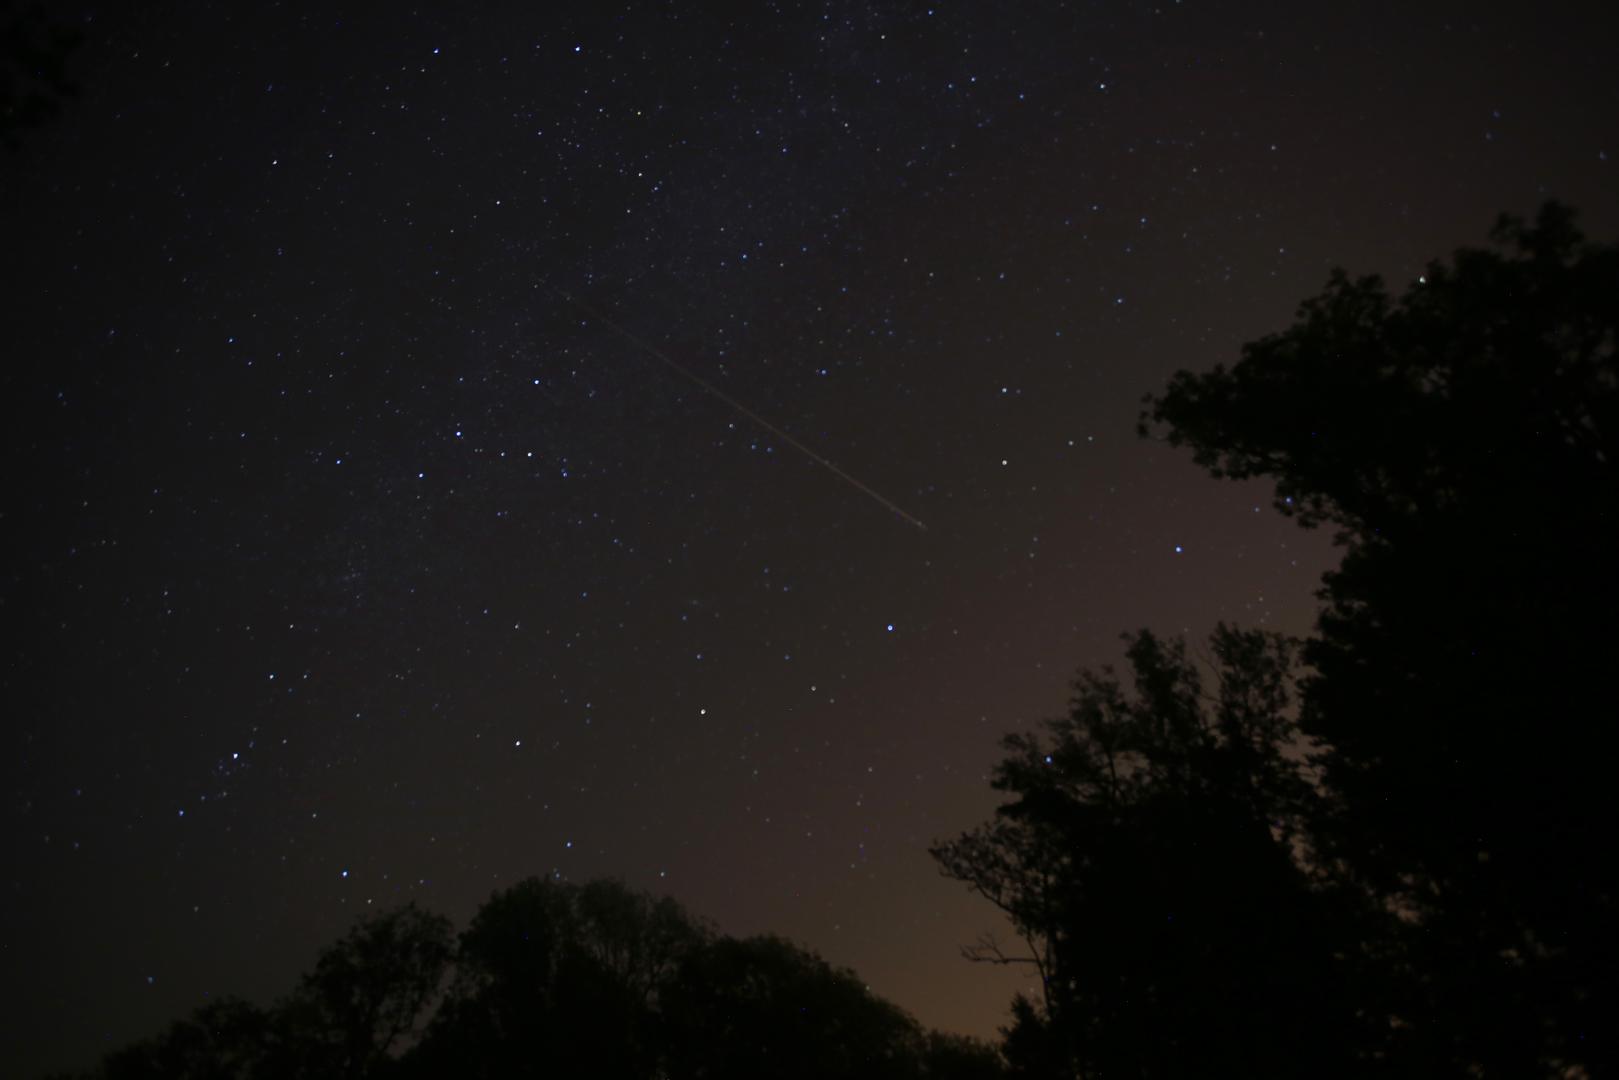 U jednom satu može se vidjeti 60-70 meteora.